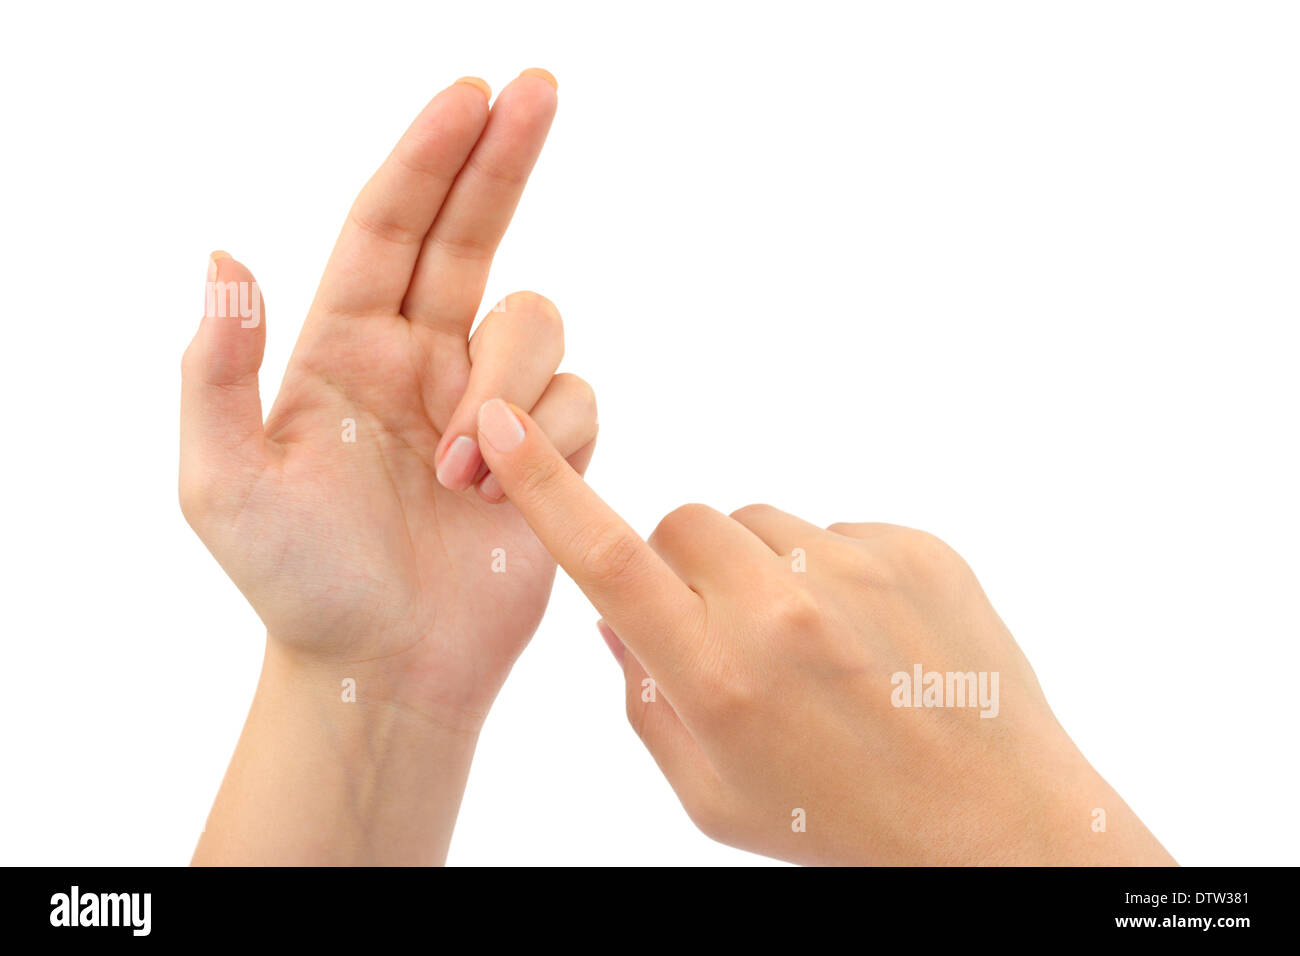 Можно считать на пальцах. Рука с согнутыми пальцами. Считает на пальцах. Женские пальцы рук.